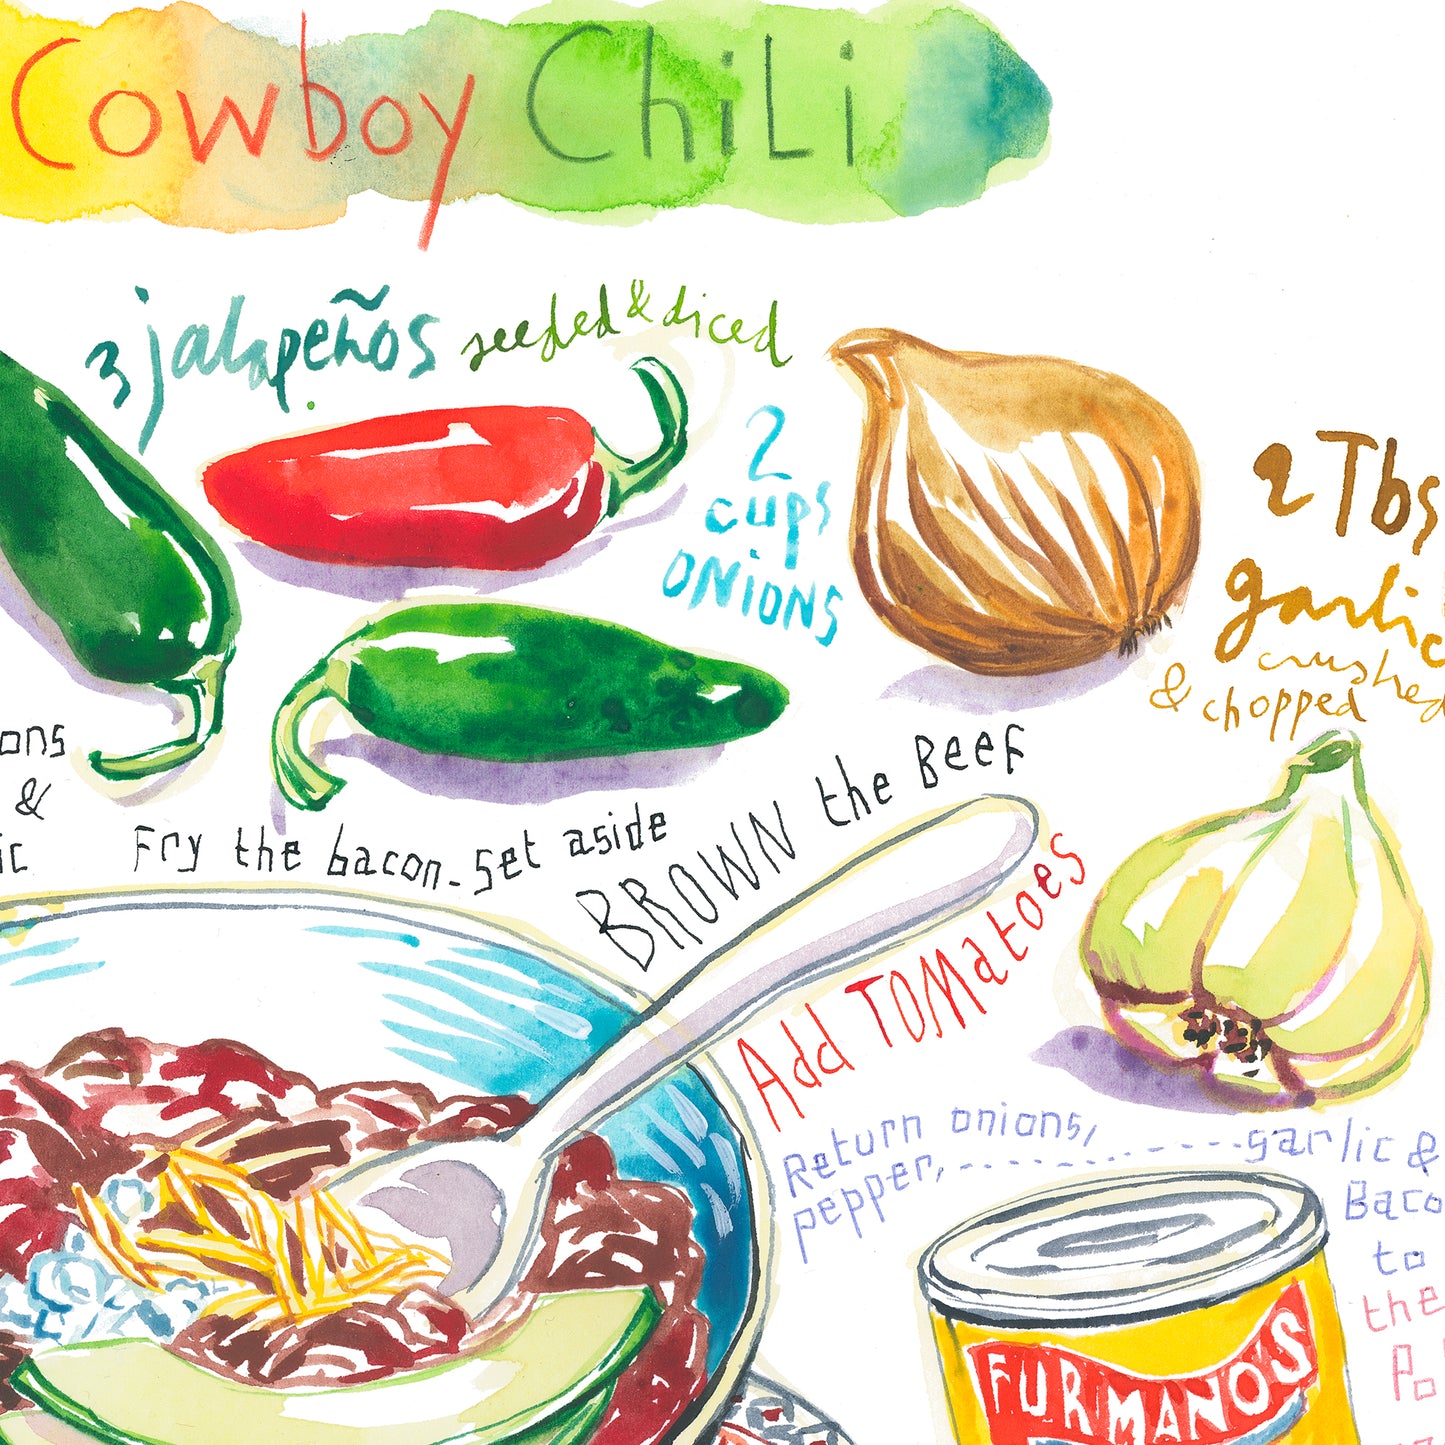 Texas Cowboy Chili recipe